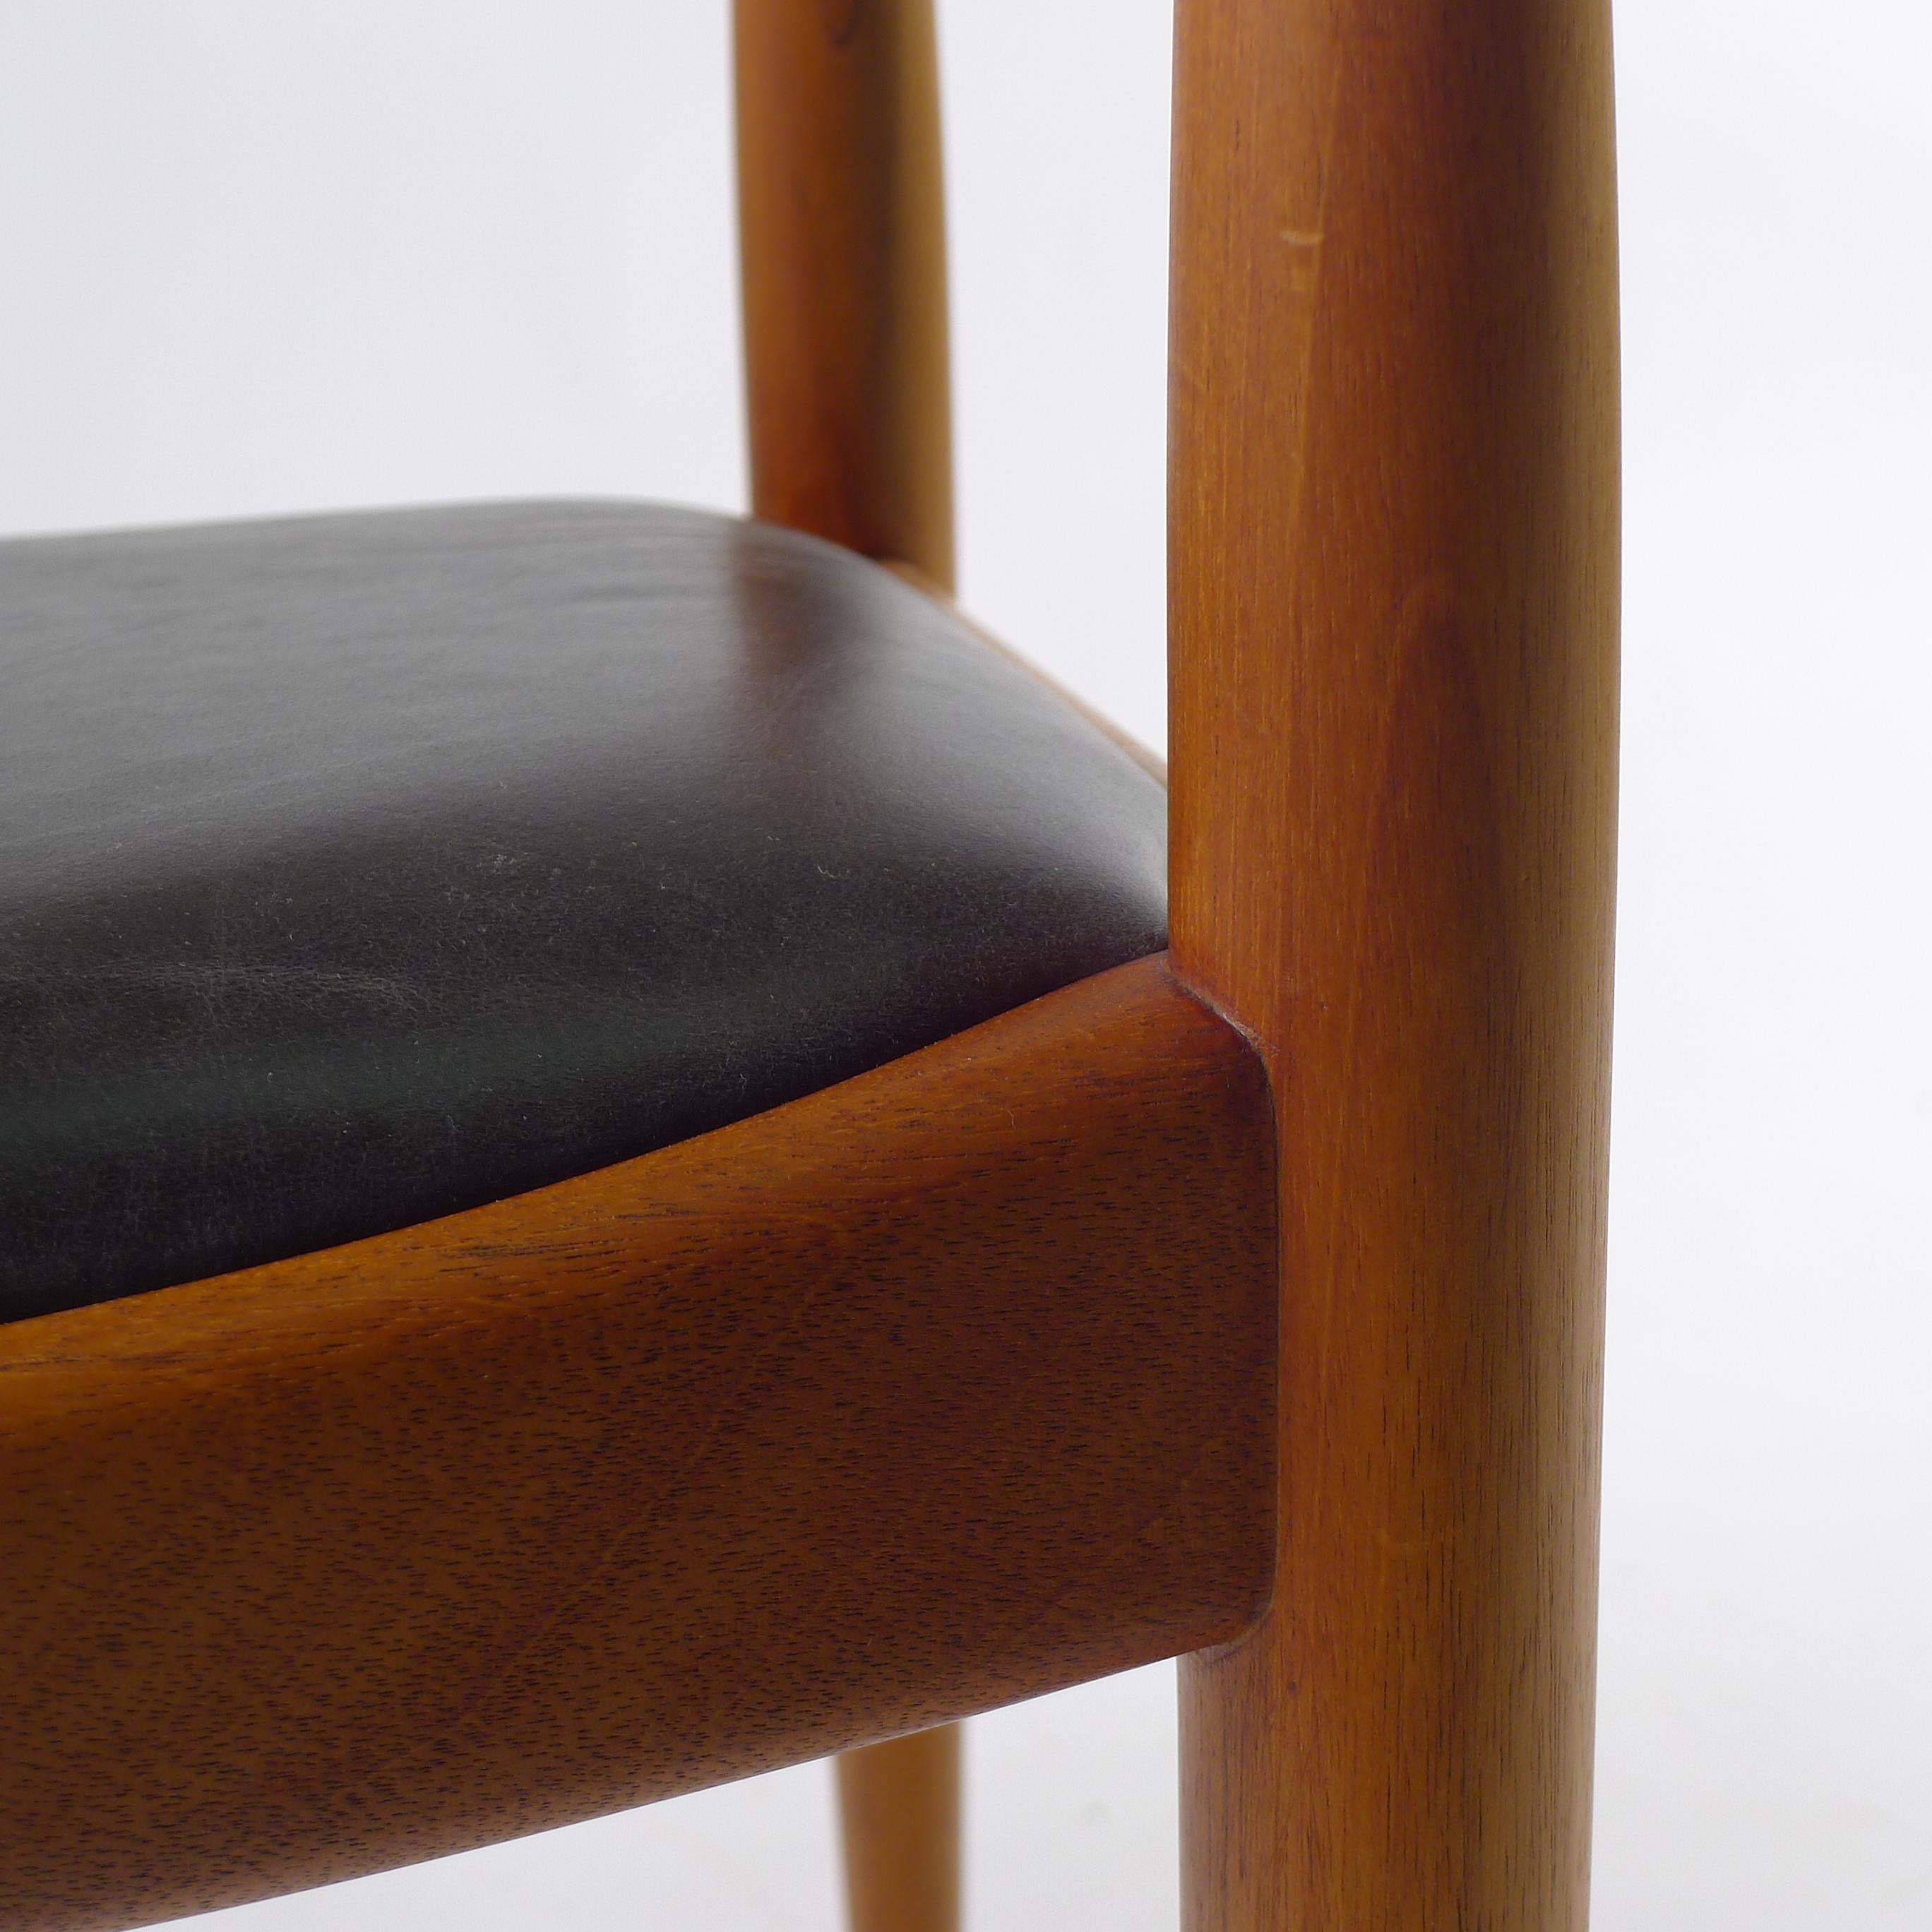 Cuir Hans J Wegner, la chaise/la chaise ronde, Design/One 1949, pour Johannes Hansen, Danemark